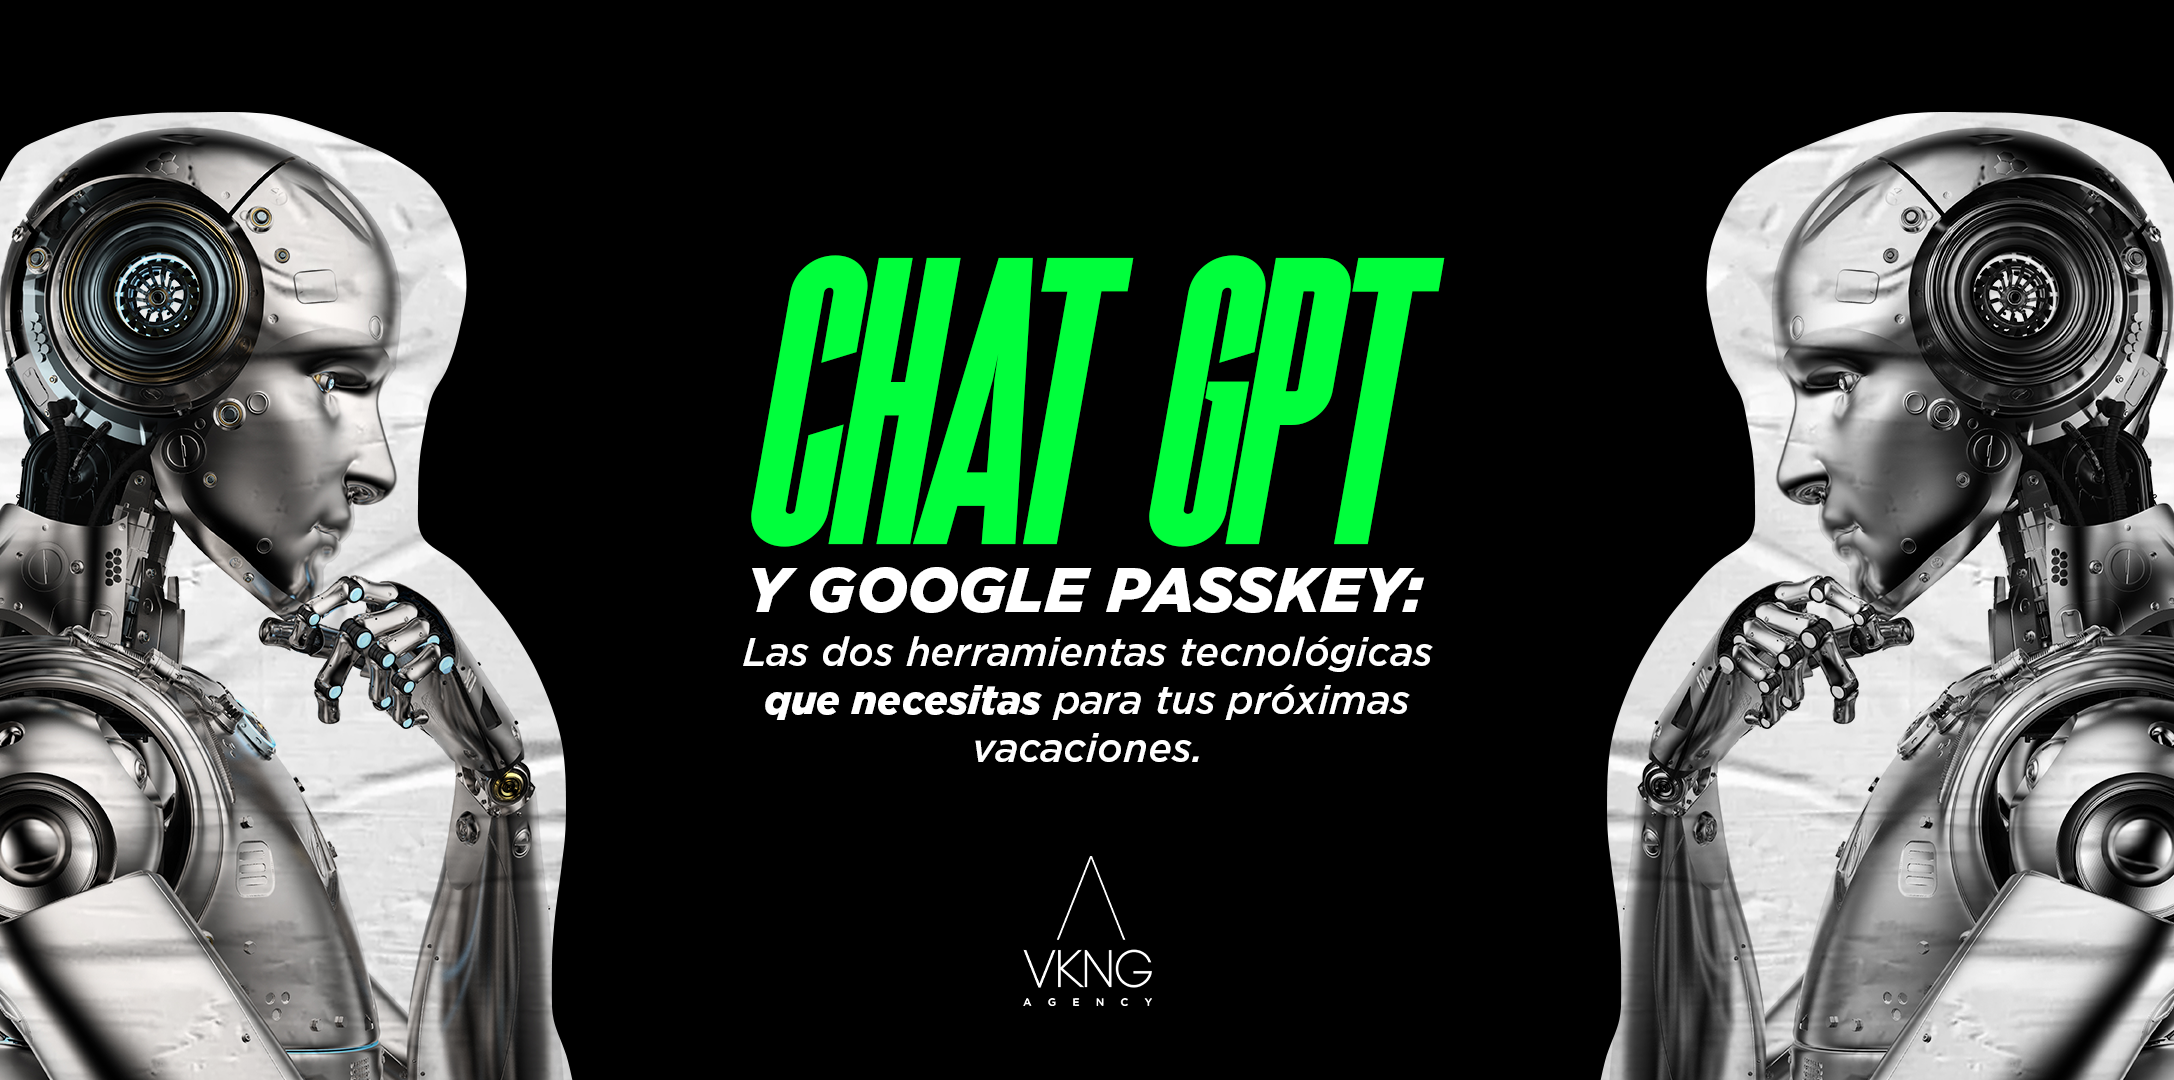 Preview blog: Chat GPT y Google Passkey: Las dos herramientas tecnológicas que necesitas para tus próximas vacaciones